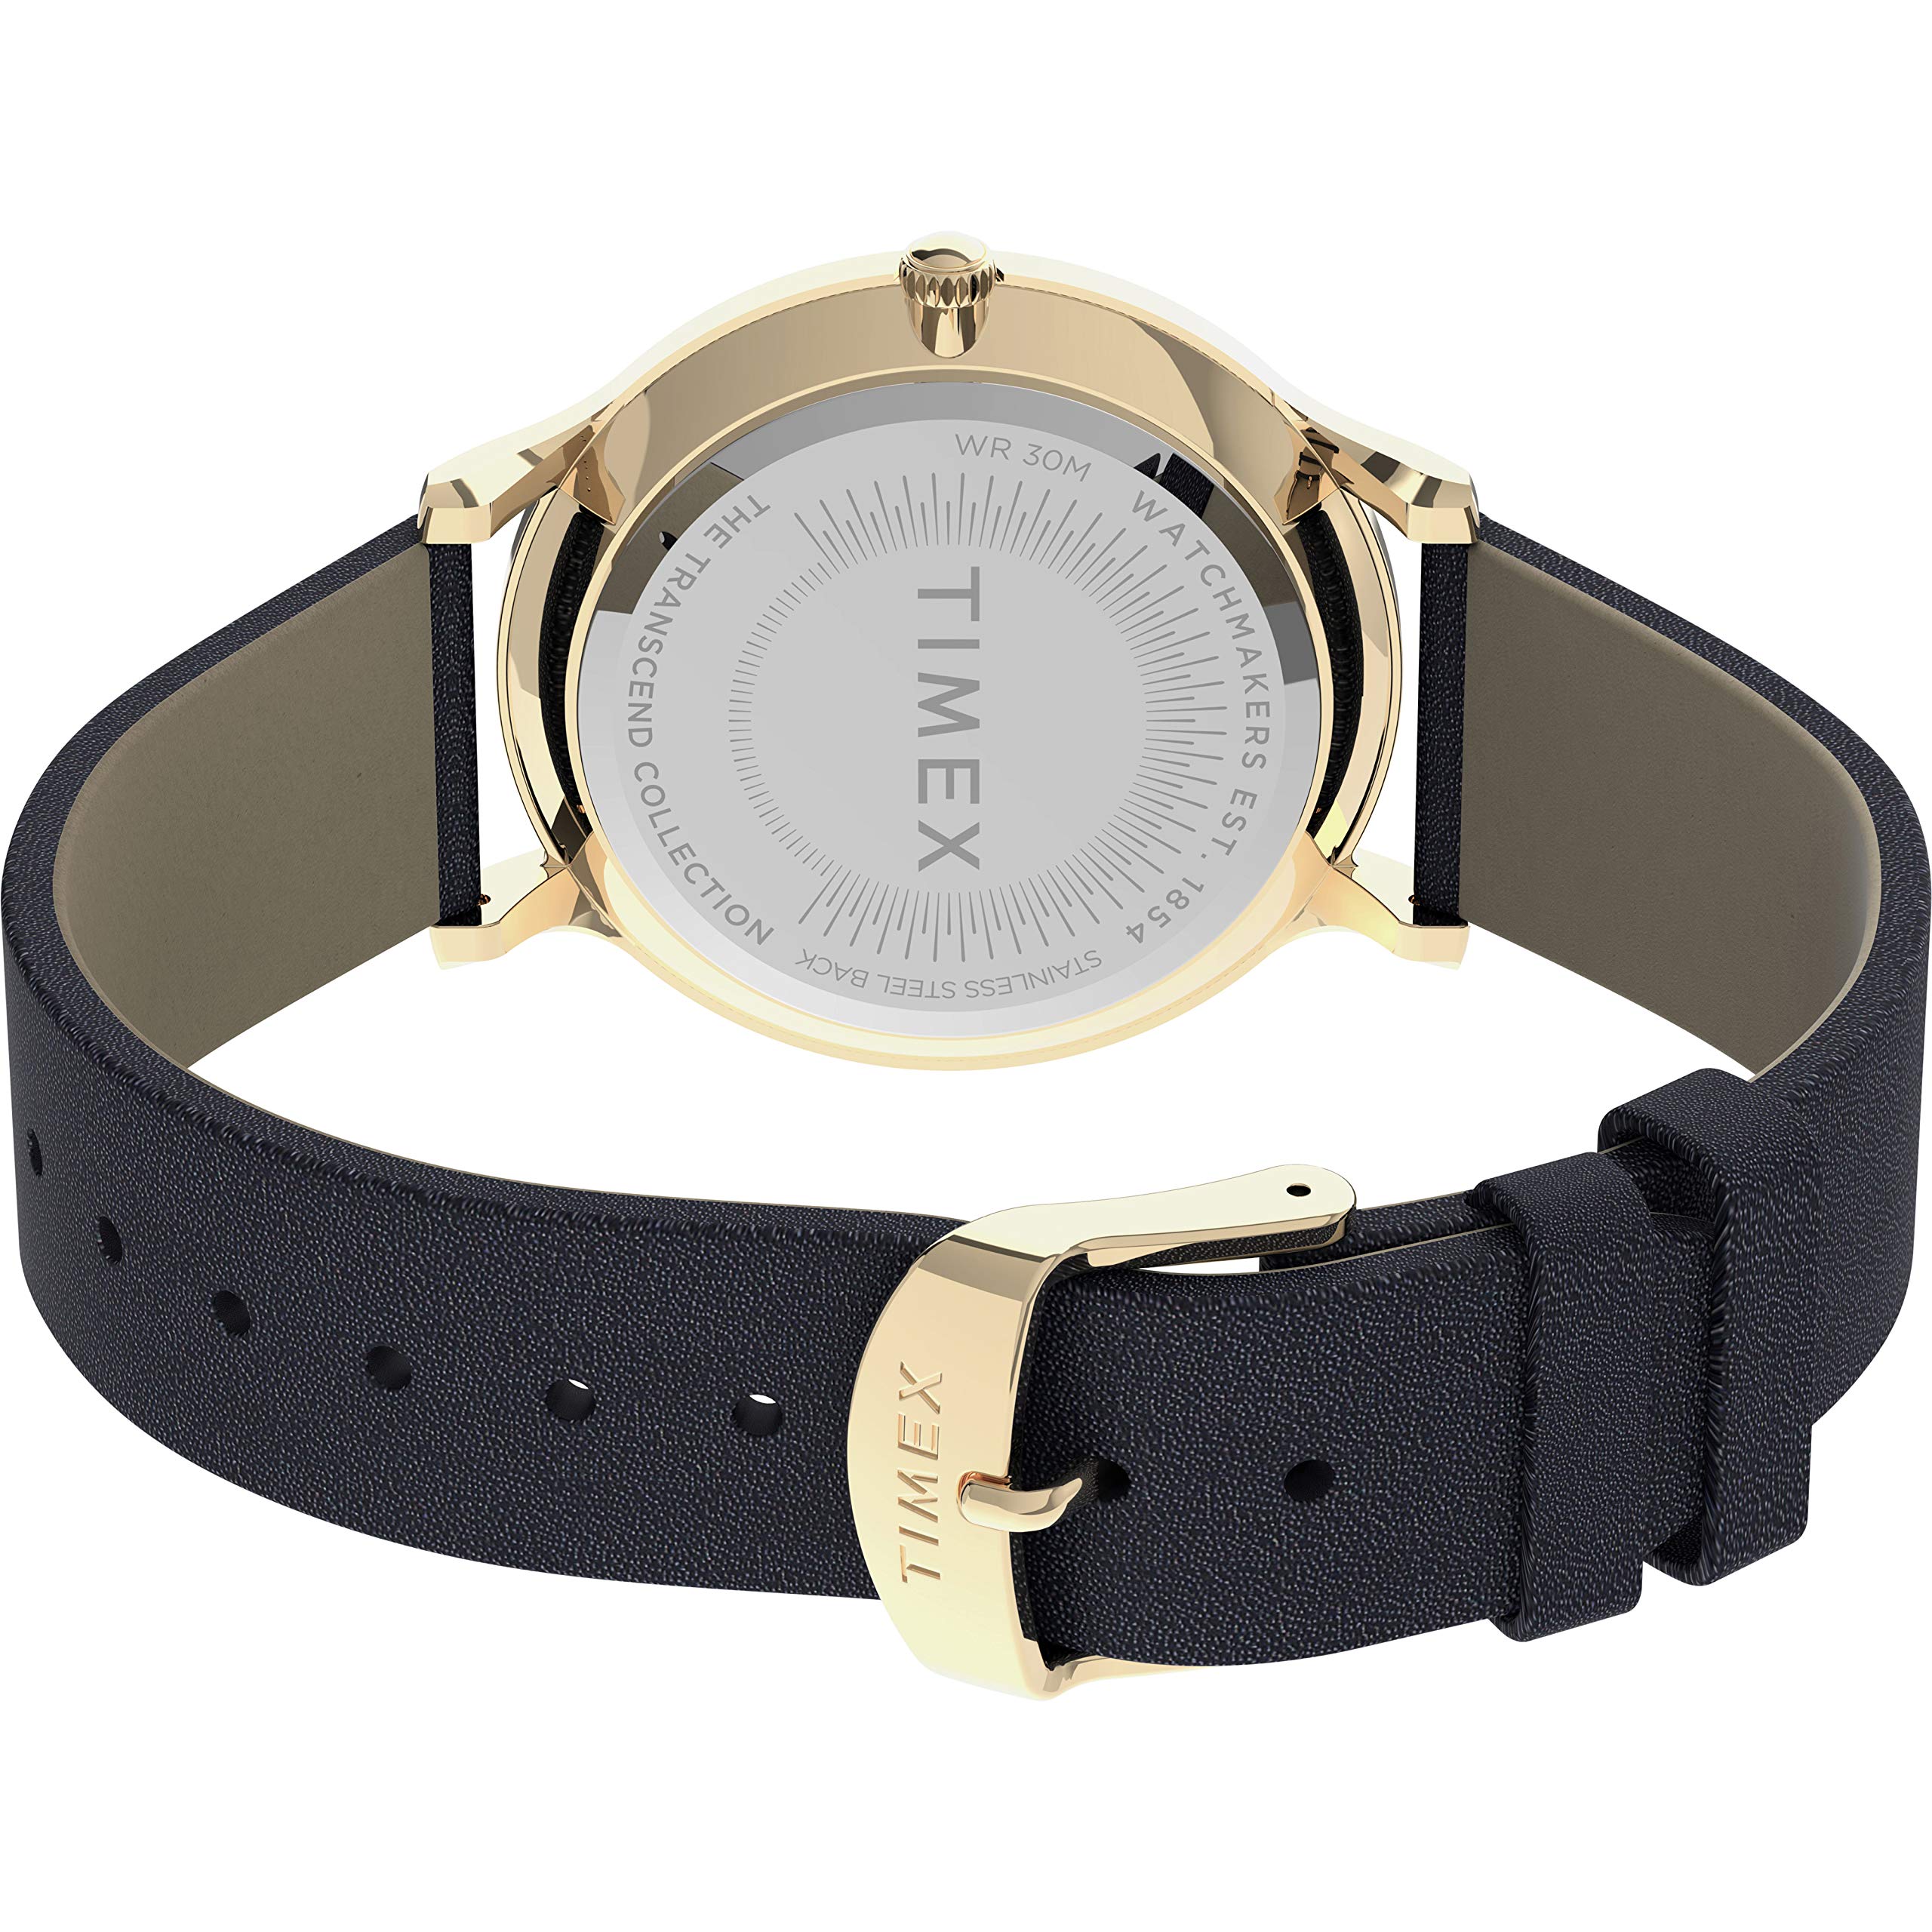 Timex Dress Watch